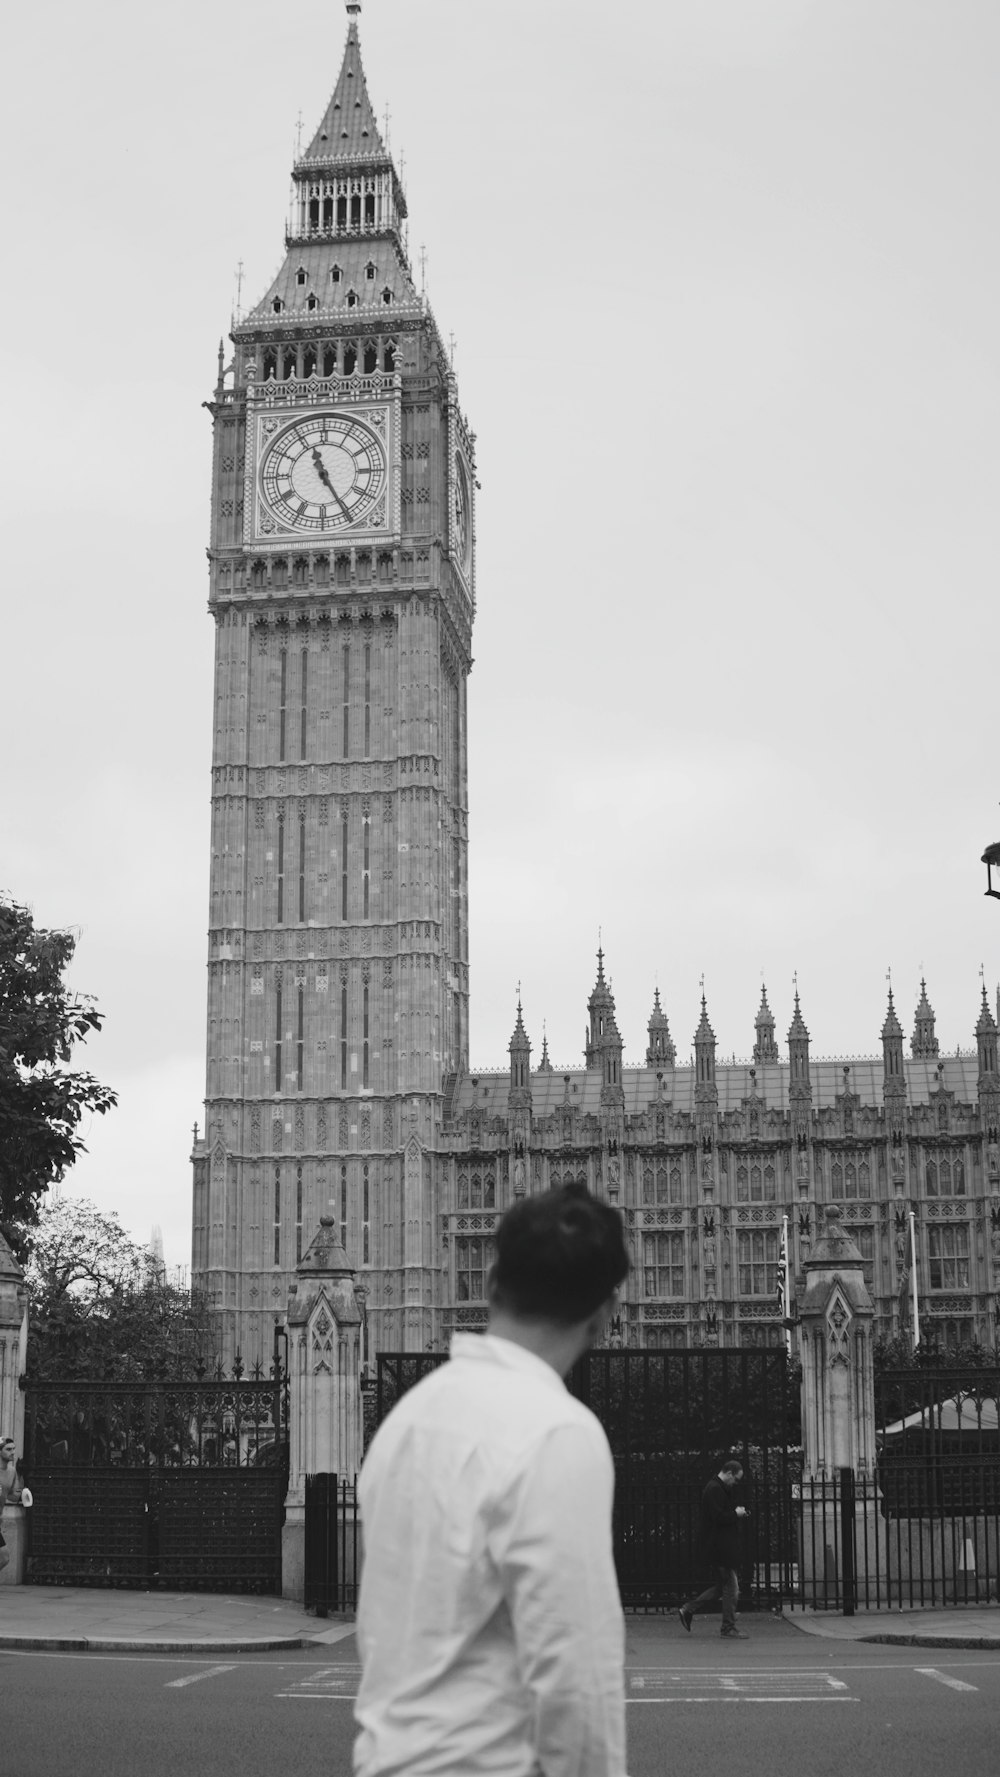 Un hombre de pie frente a una alta torre de reloj